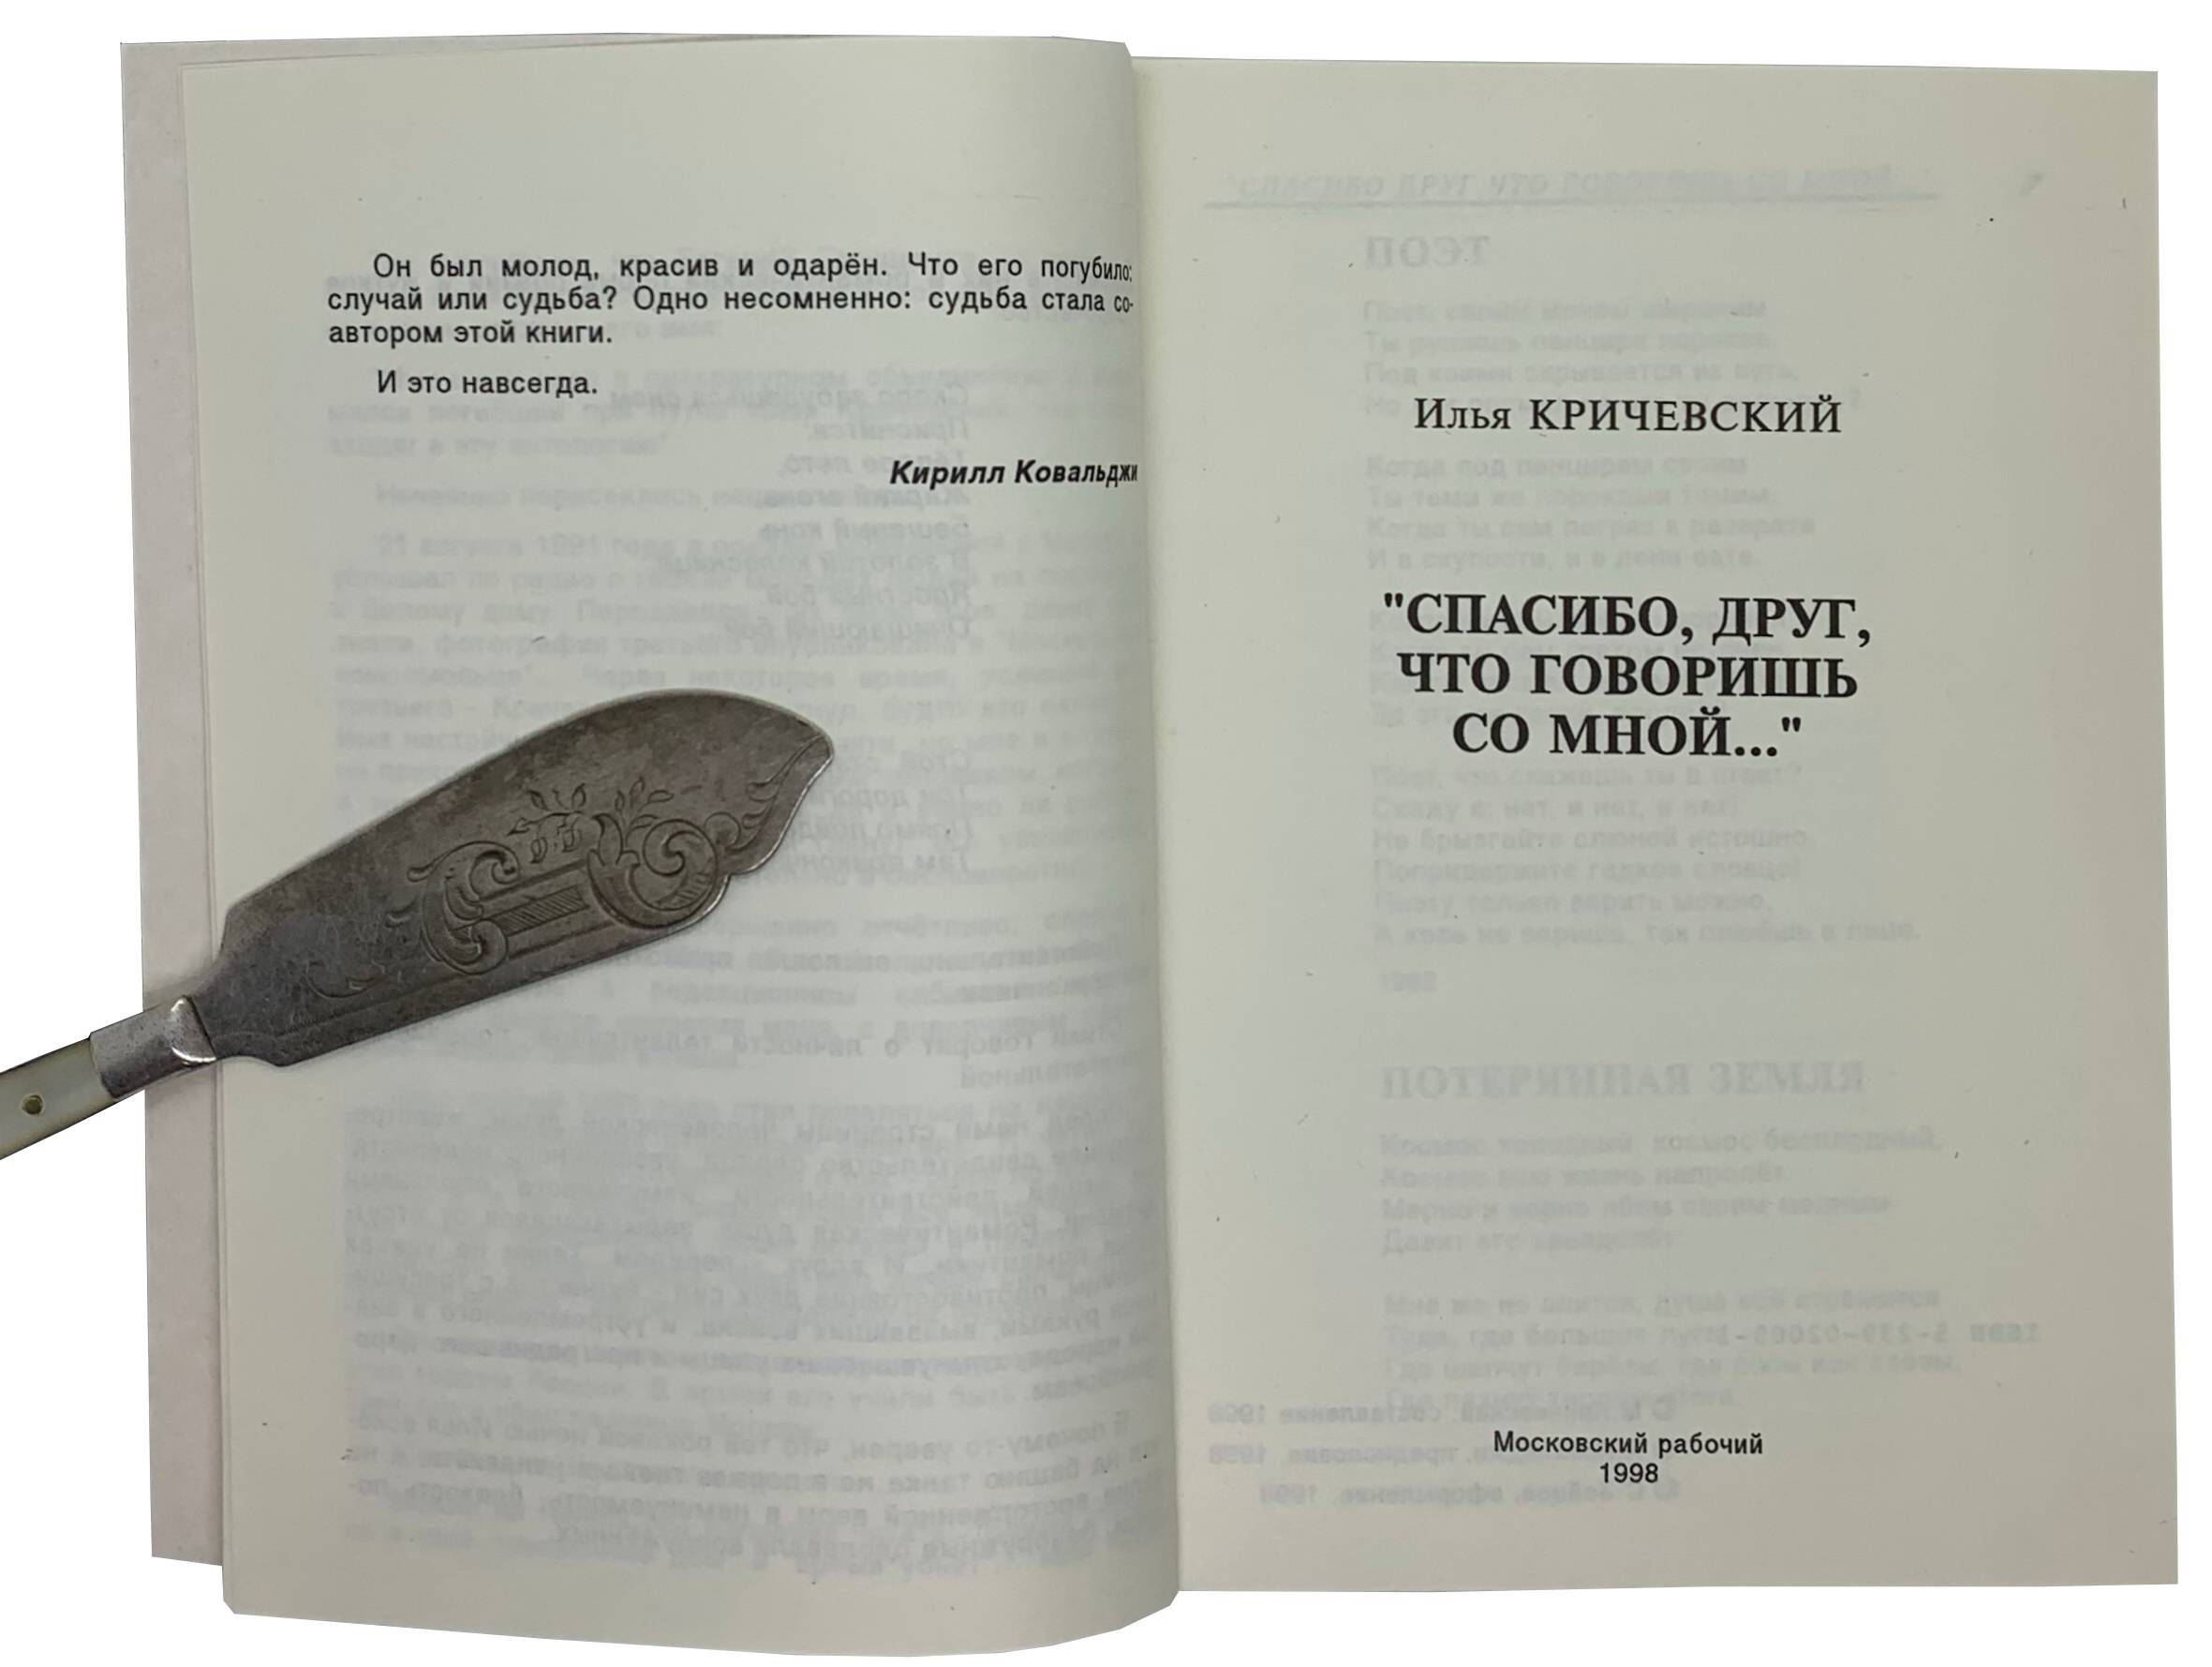 Ilya Krichevsky. Spasibo, drug, chto govorish so mnoj. / Thanks friend for talking to me. Moscow, 1998 - landofmagazines.com